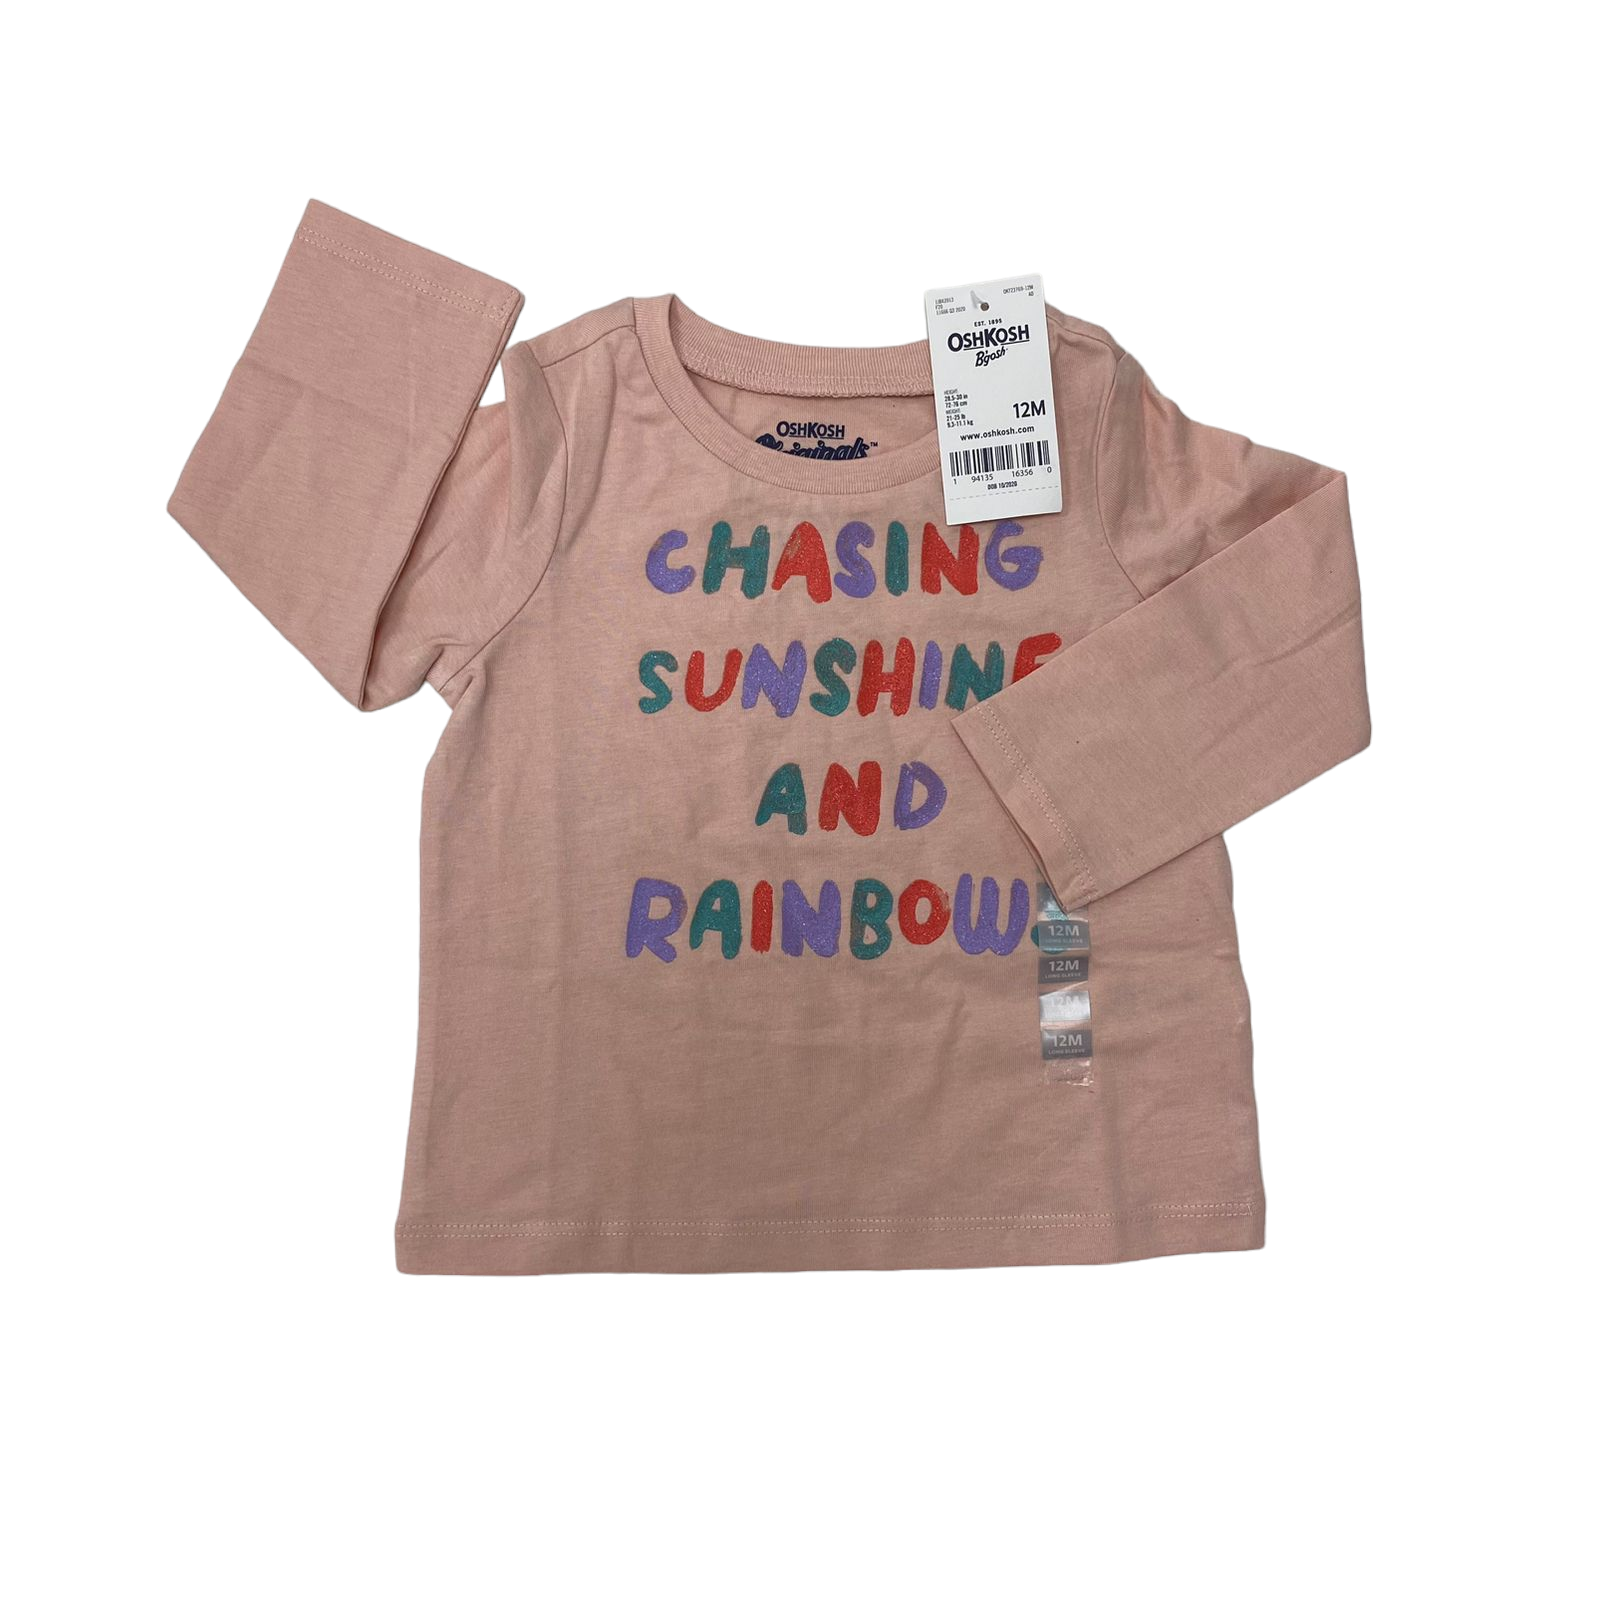 Polera manga larga rosada con letras de colores "Chasing"nueva con etiqueta